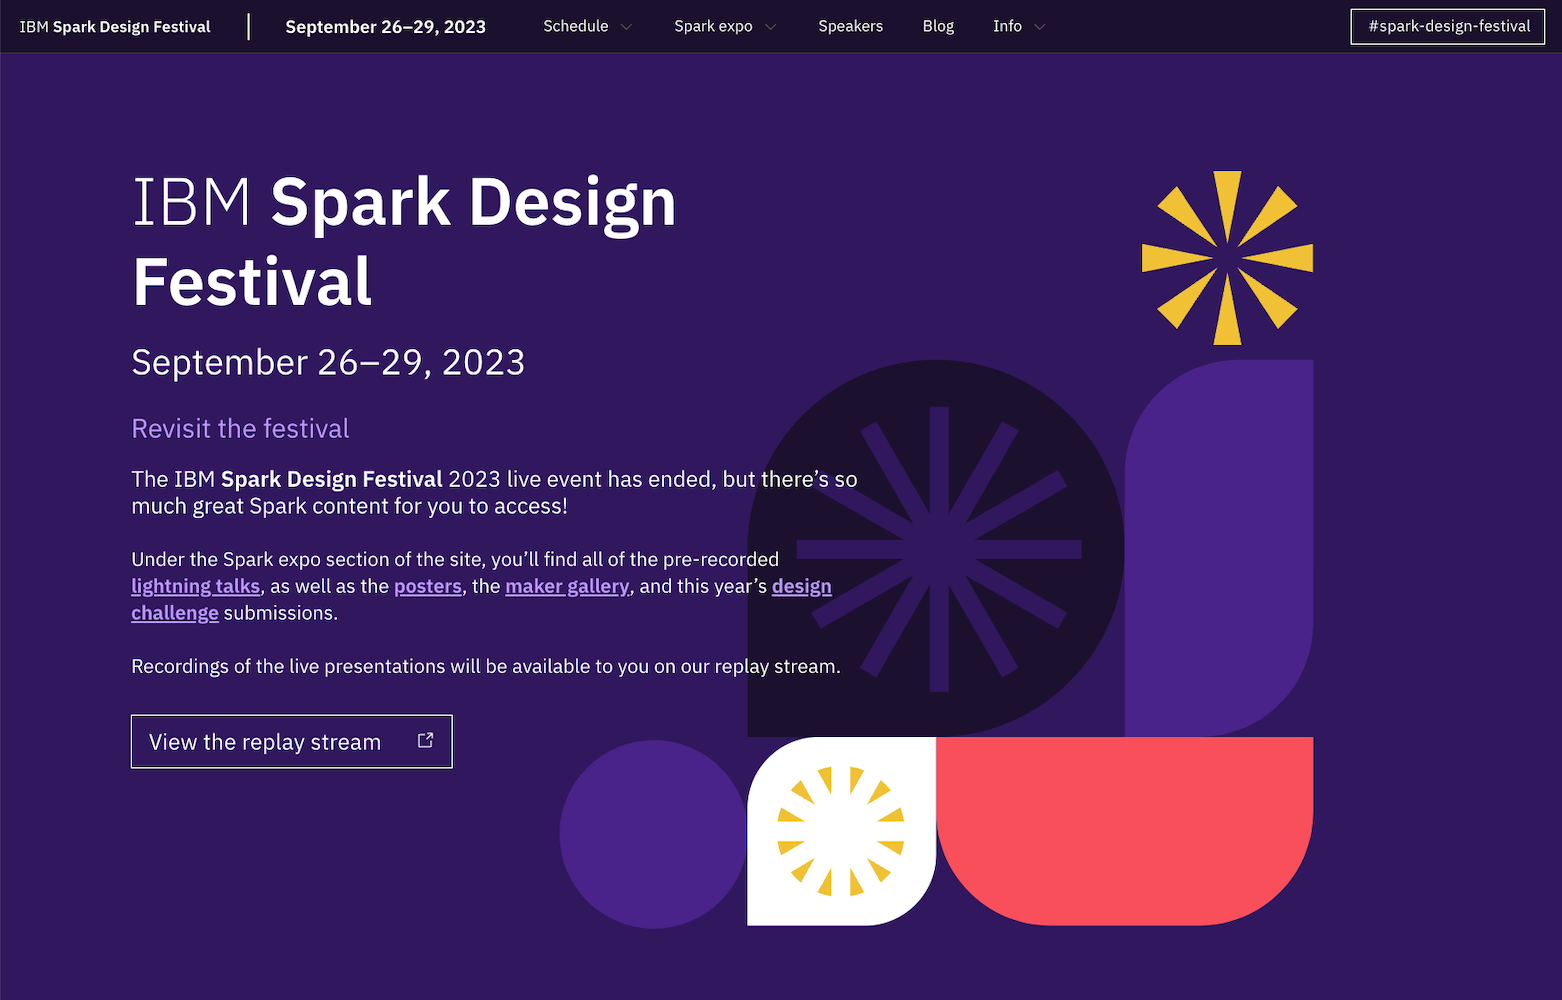 The website for the internal IBM Spark Design Festival 2023